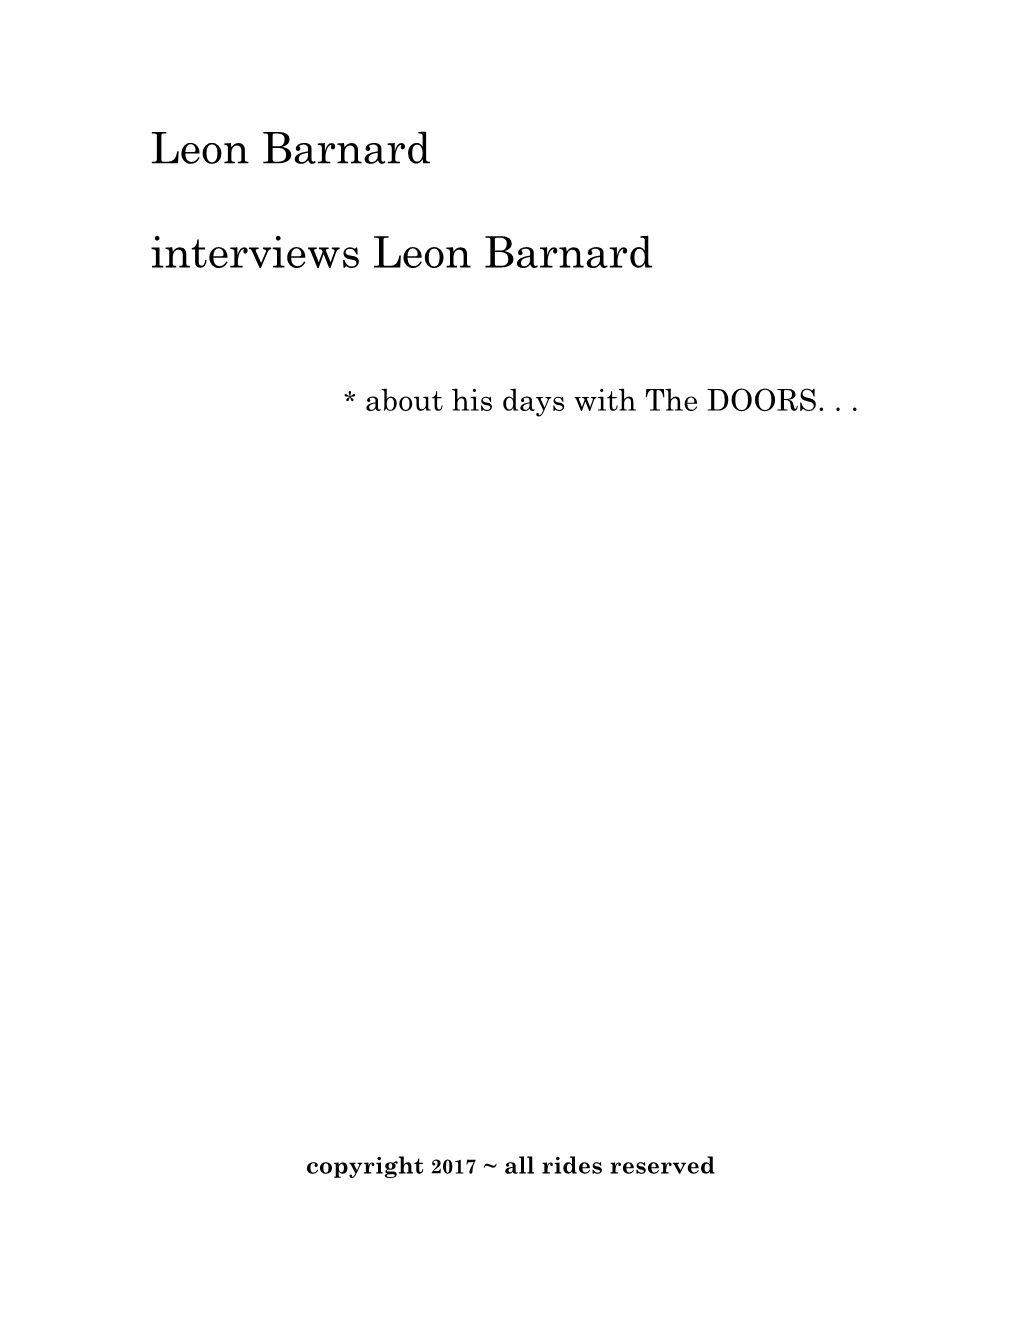 Leon Barnard Interviews Leon Barnard